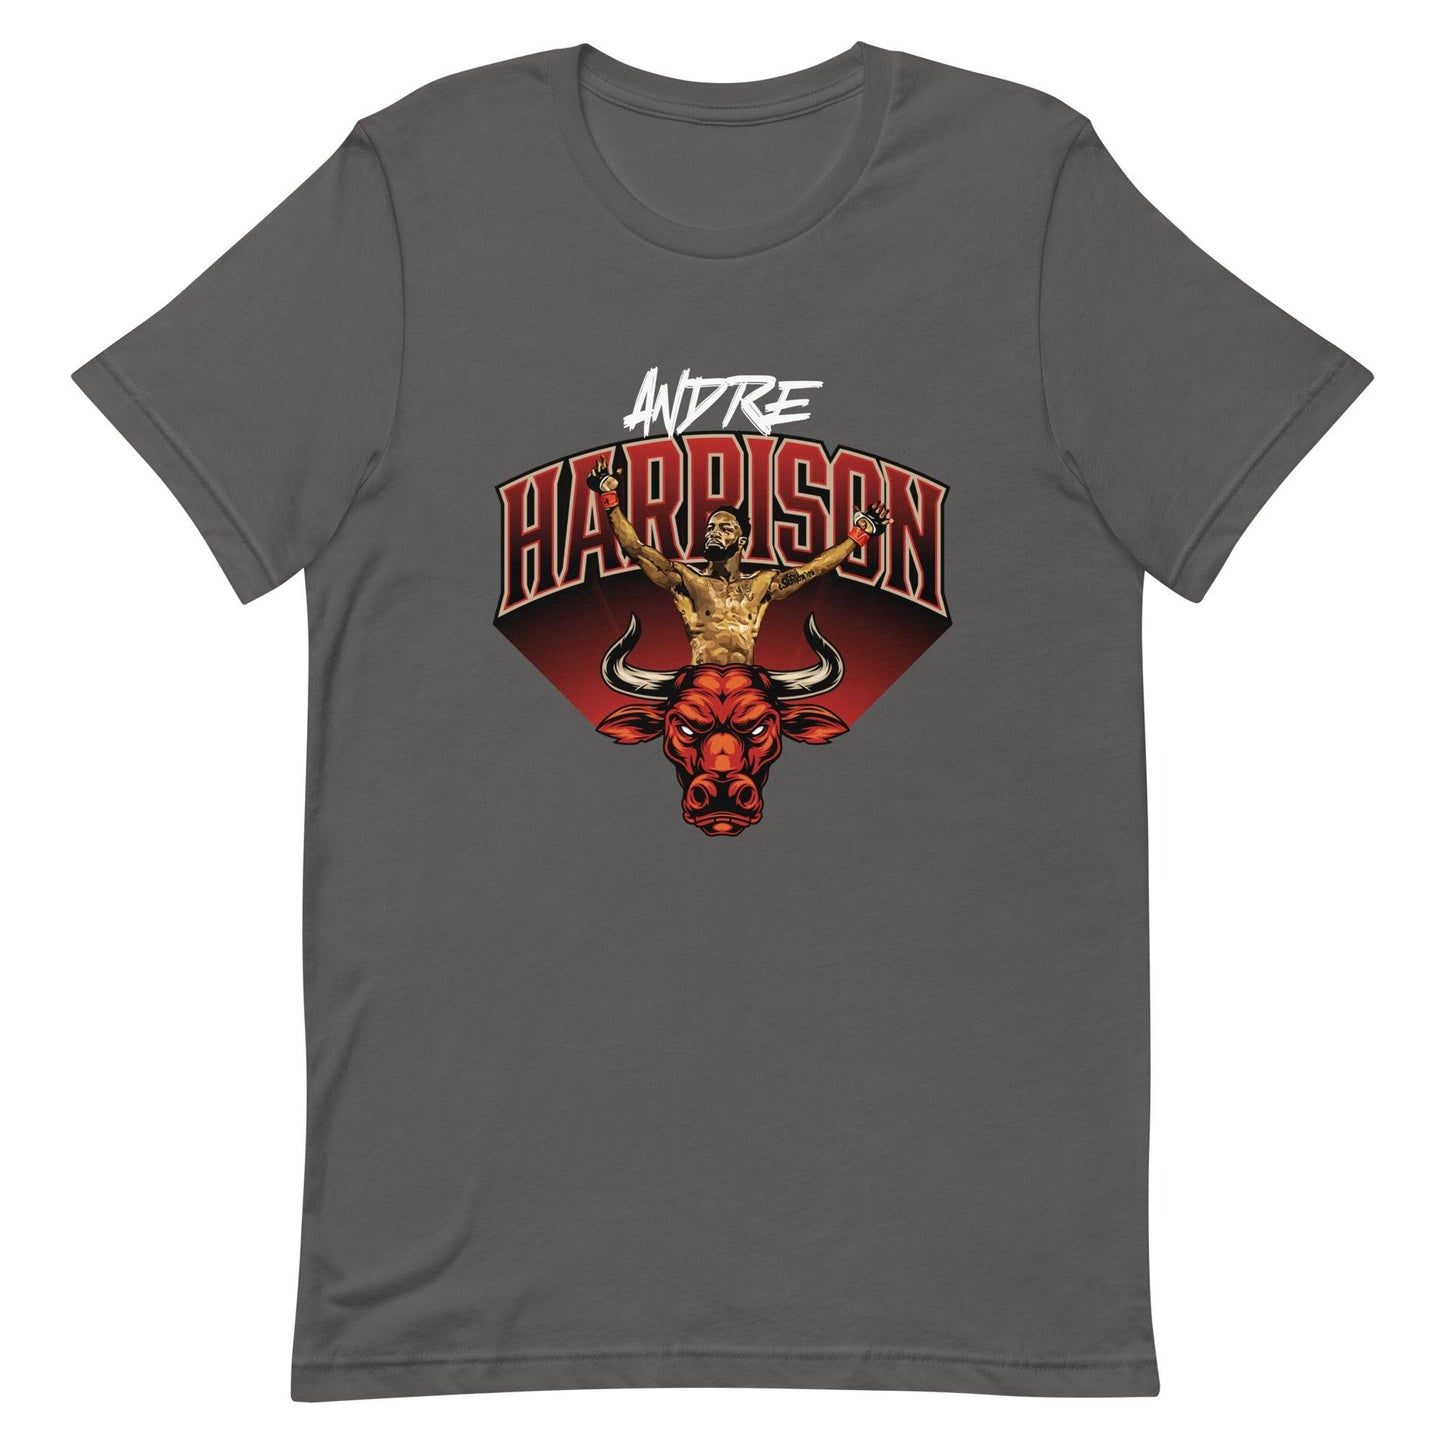 Andre Harrison t-shirt - Fan Arch